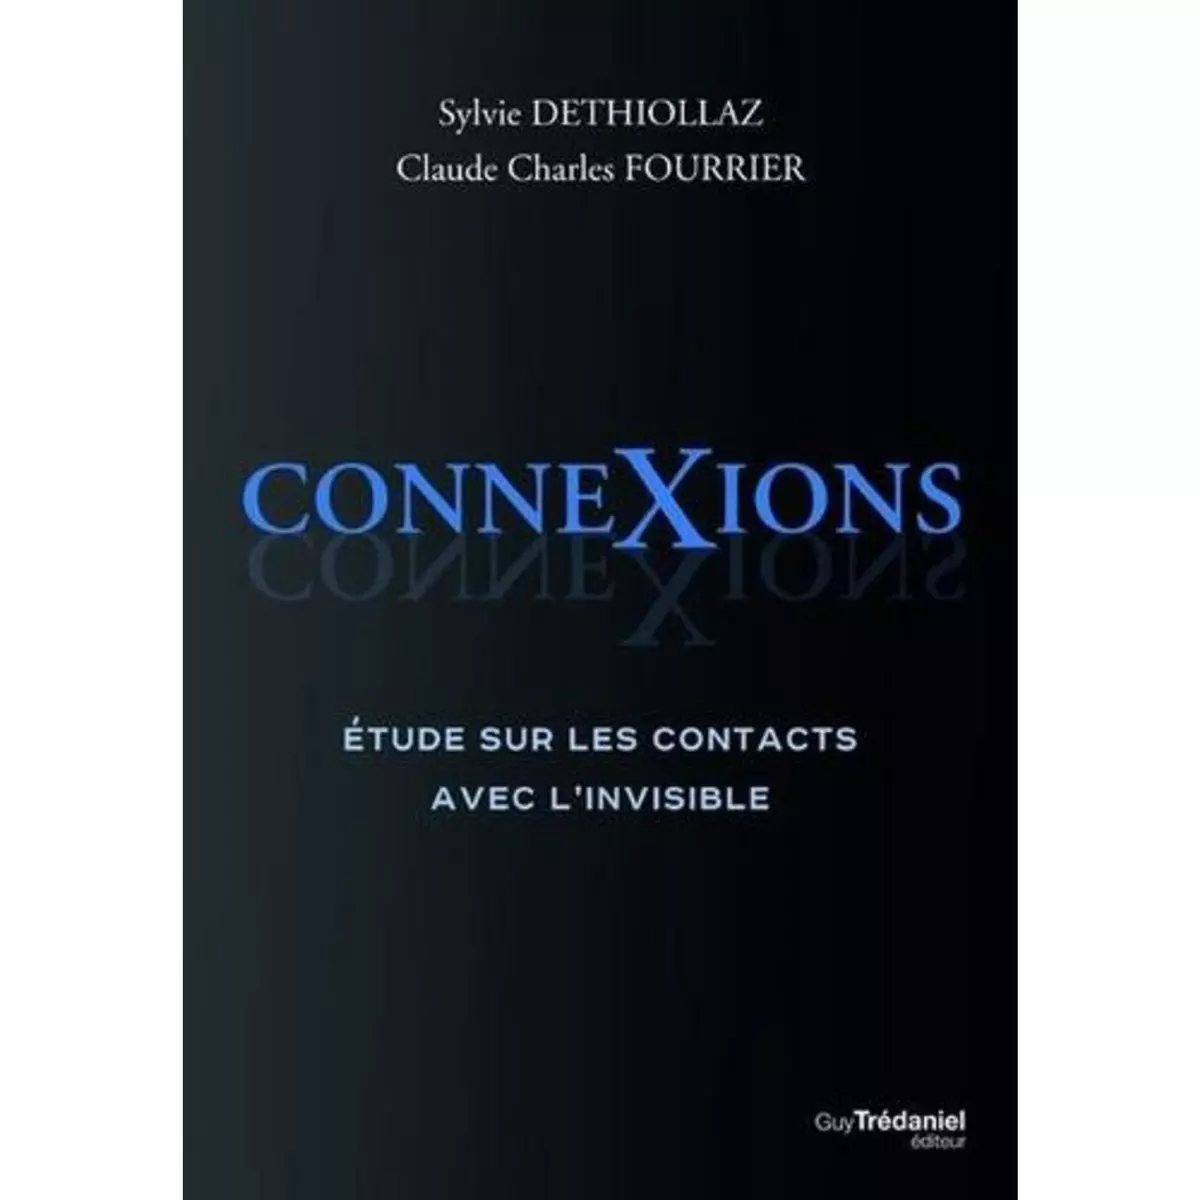  CONNEXIONS. ETUDE SUR LES CONTACTS AVEC L'INVISIBLE, Déthiollaz Sylvie